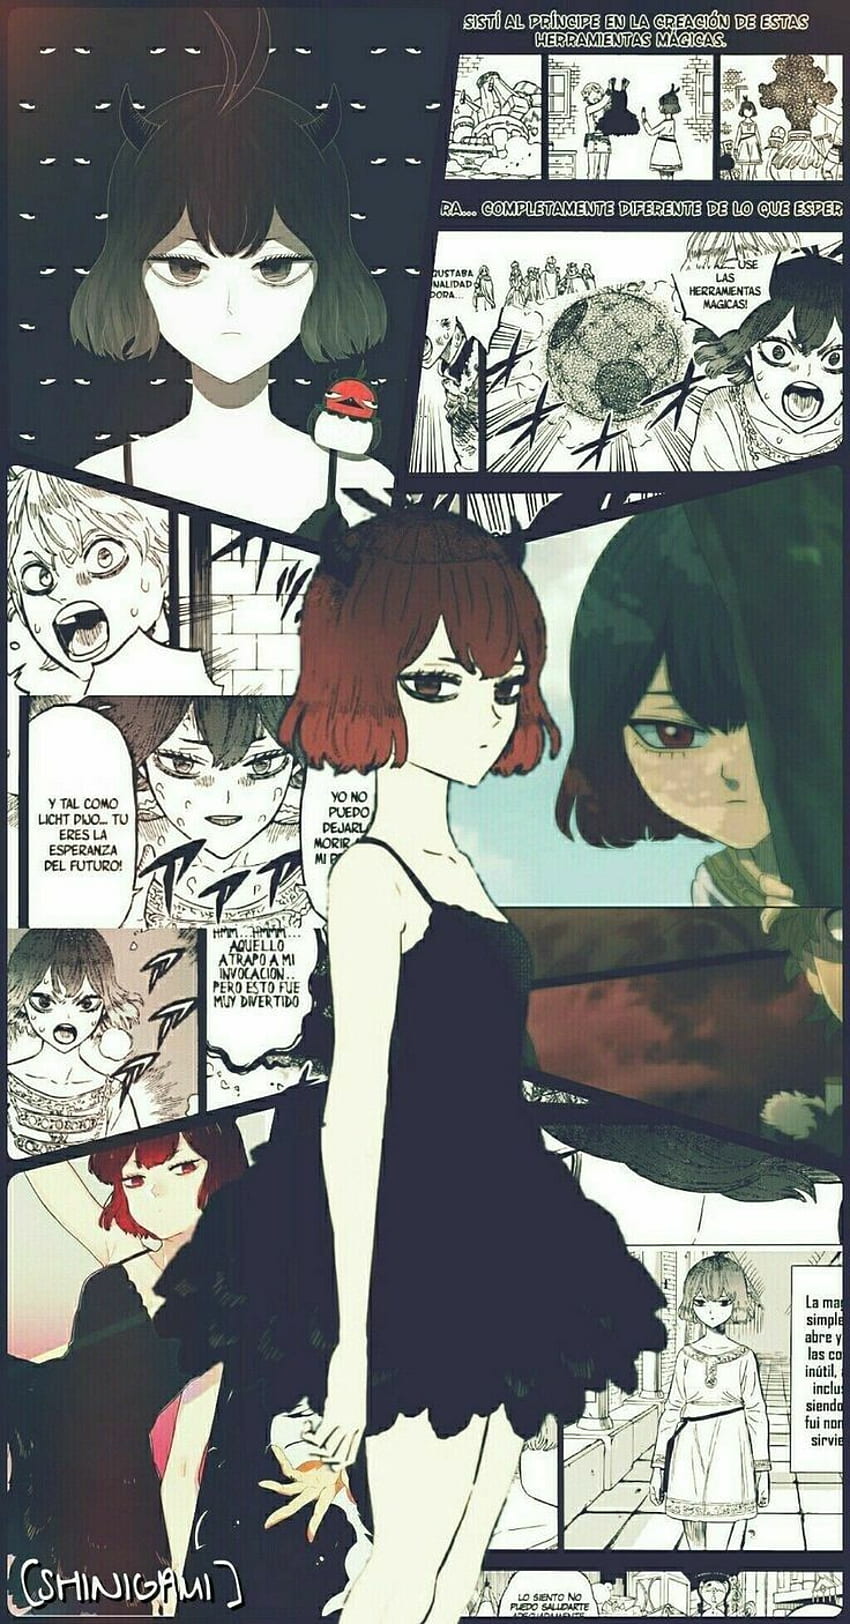 Anime World. Black clover manga, Black clover anime, Anime, Nero Black Clover HD phone wallpaper